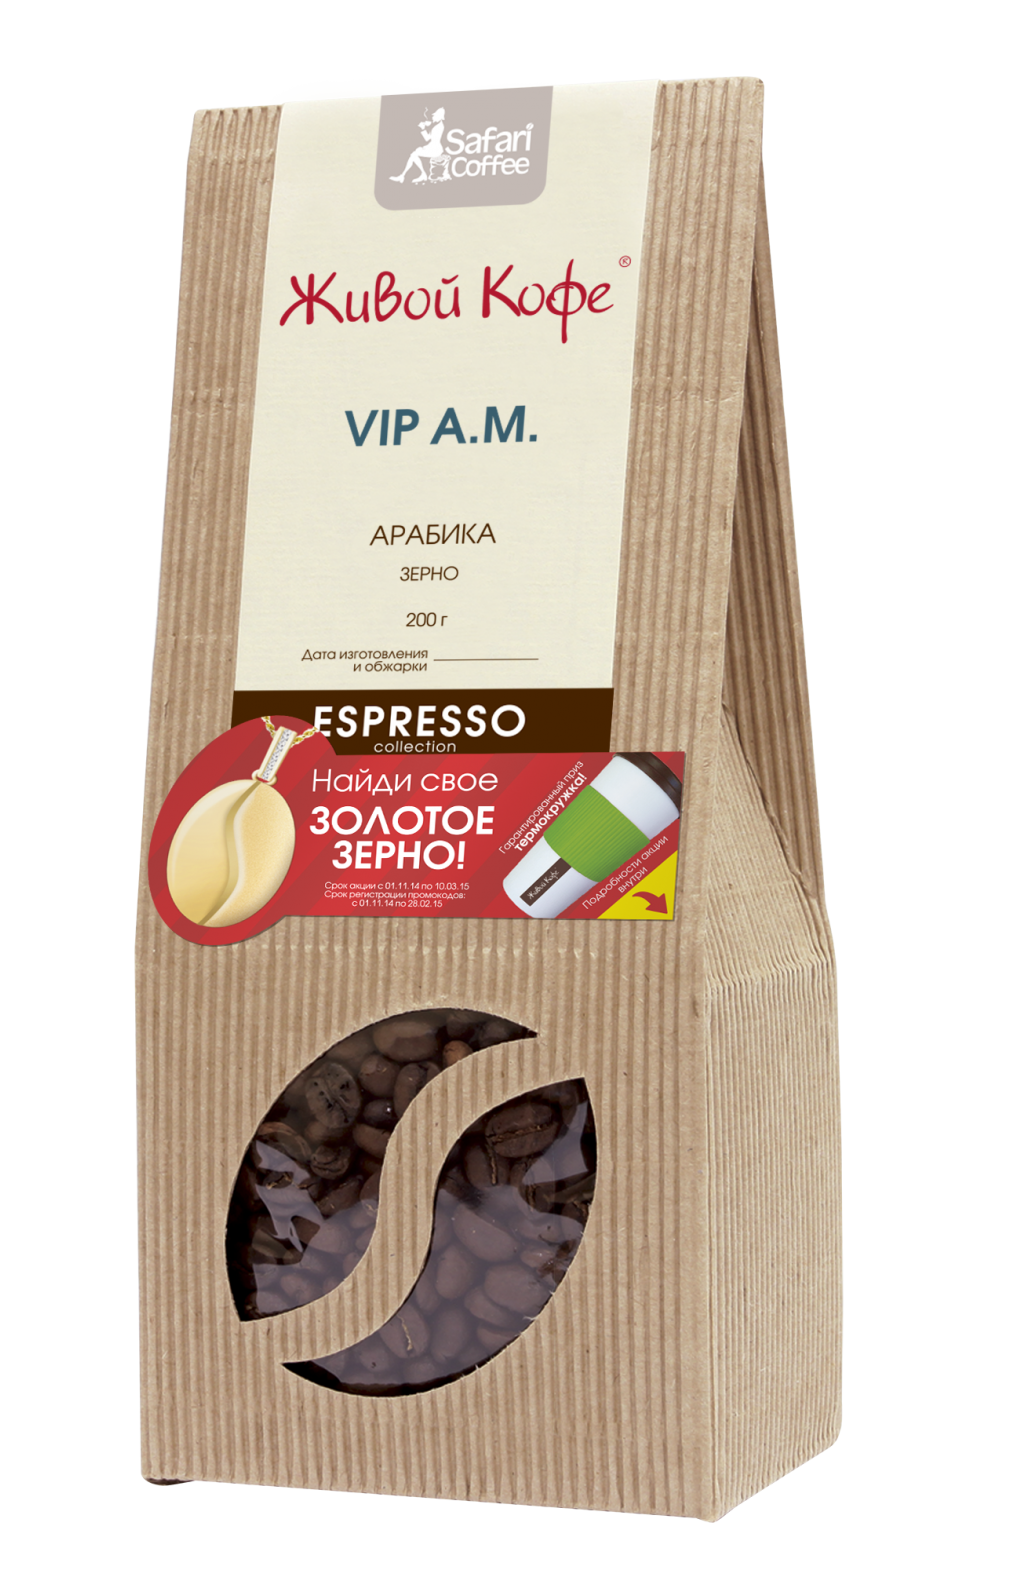 Espresso VIP A.M. ( VIP A.M.) 200 _245 +%